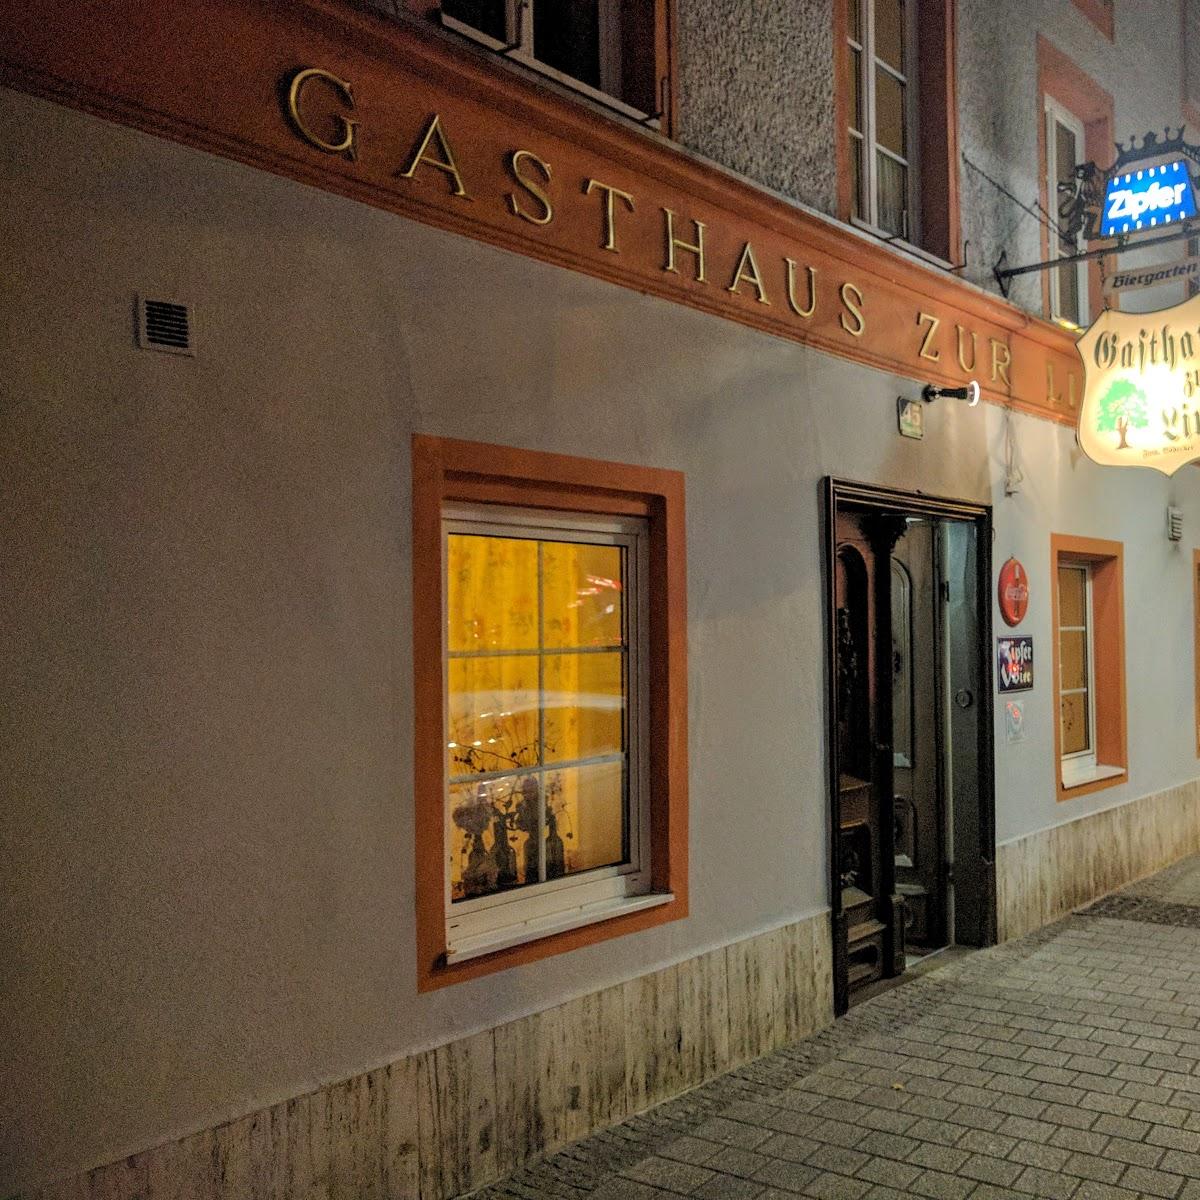 Restaurant "Gasthaus zur Linde" in Wels